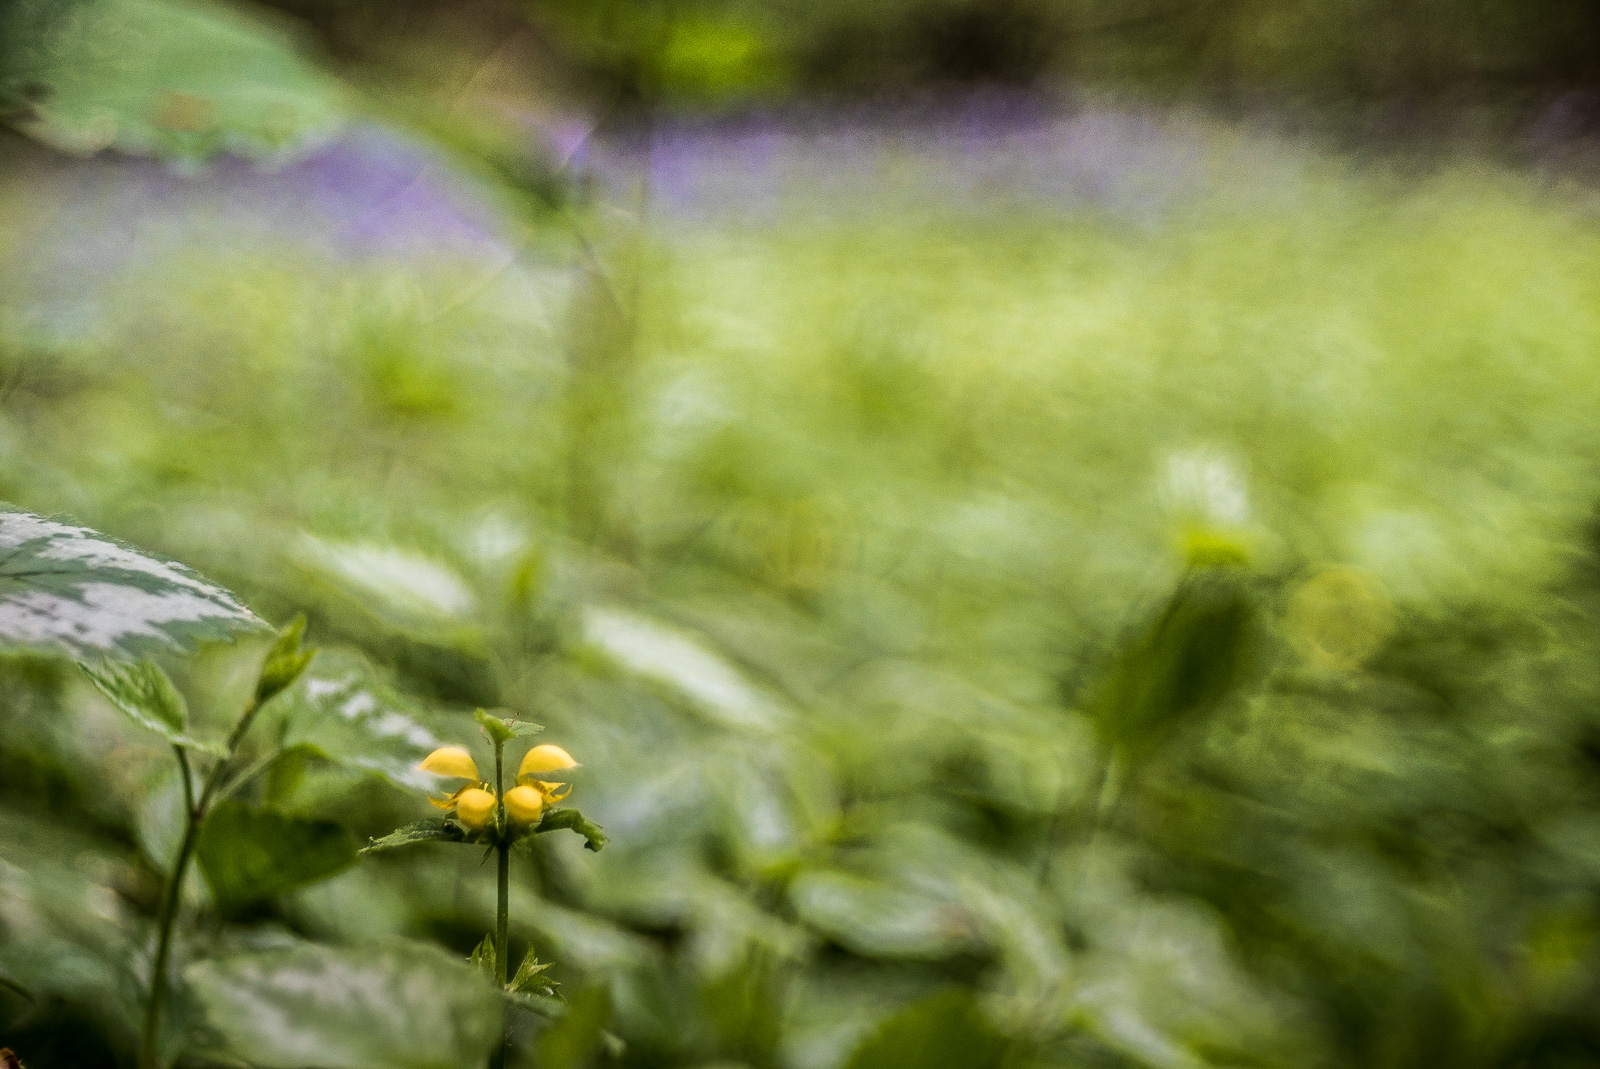 Eine Waldlandschaft, dicht grün bewachsener Boden. Vorn scharf eine einzelne Nessel mit gelber Blüte. Hinten/oben am Bildrand ein diffuser Streifen violetter Blüten